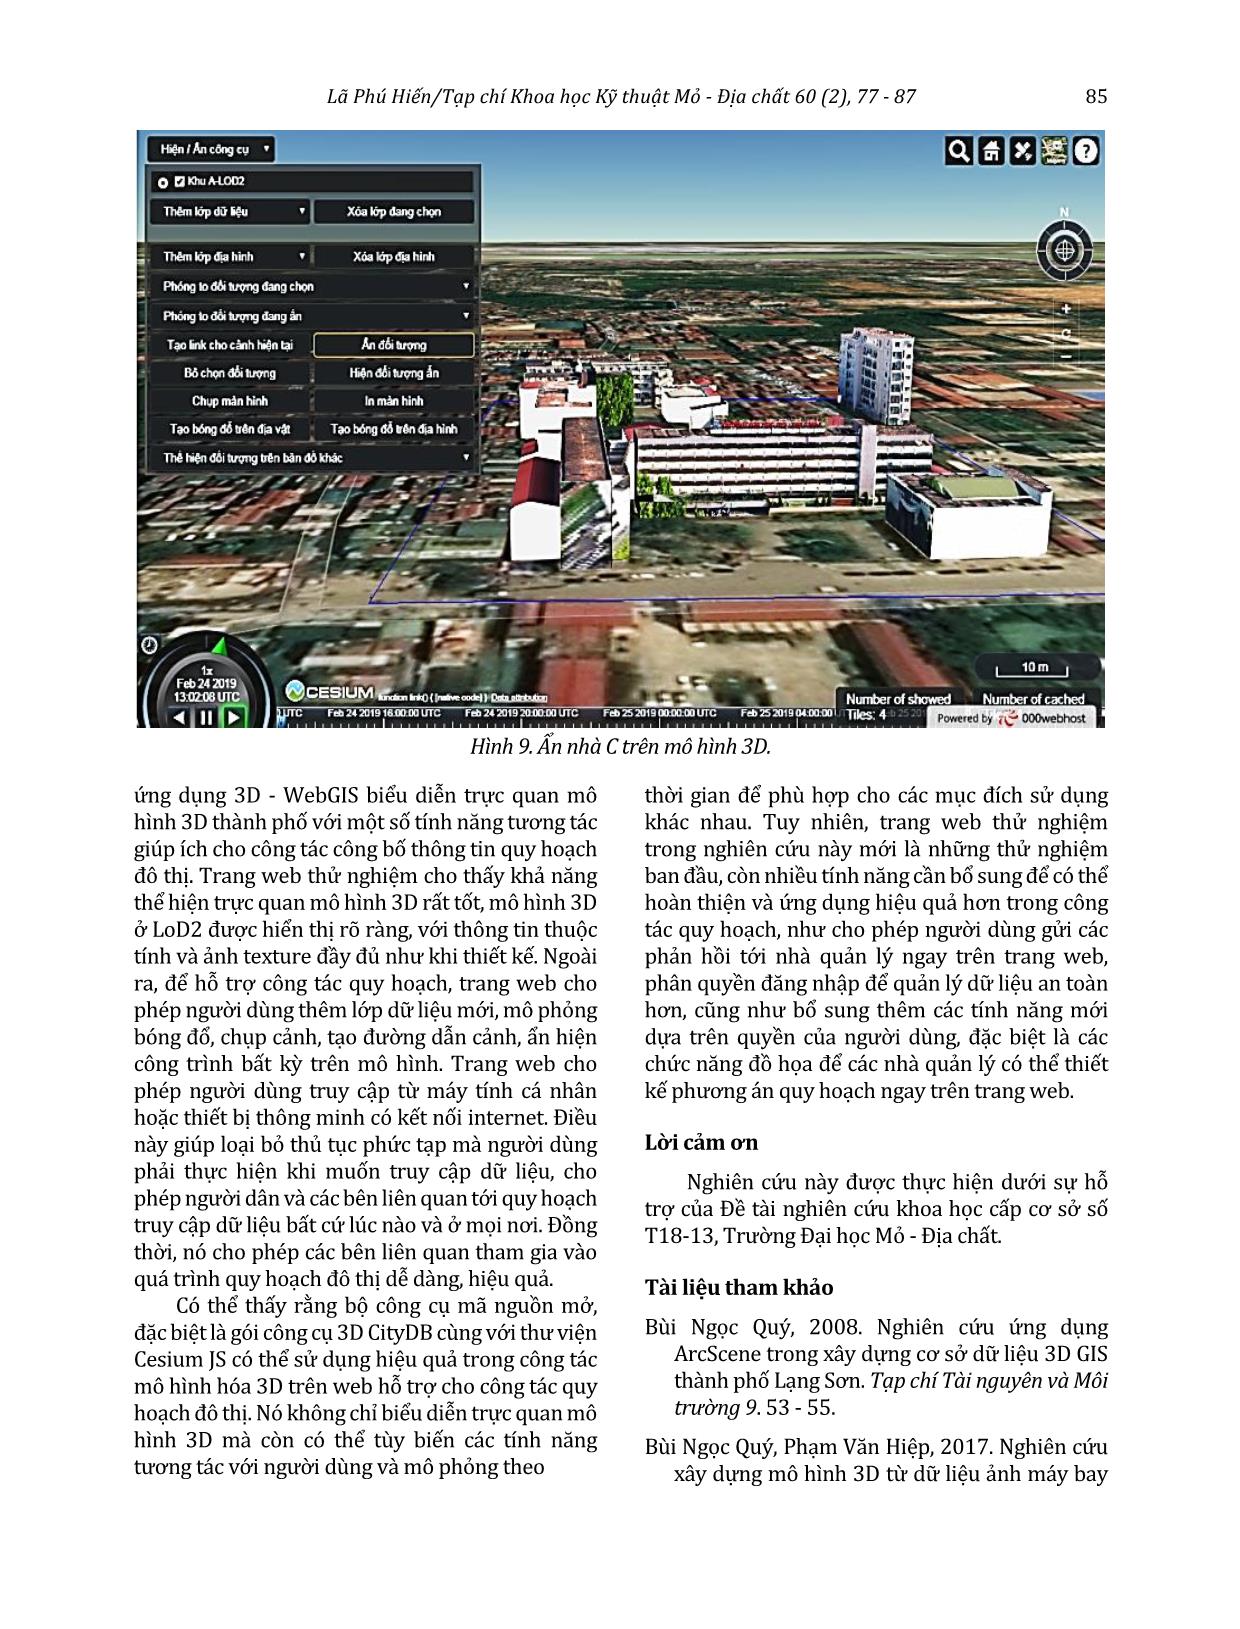 Giải pháp trực quan hóa mô hình 3D thành phố trên nền web bằng công cụ mã nguồn mở hỗ trợ công tác quy hoạch đô thị trang 9